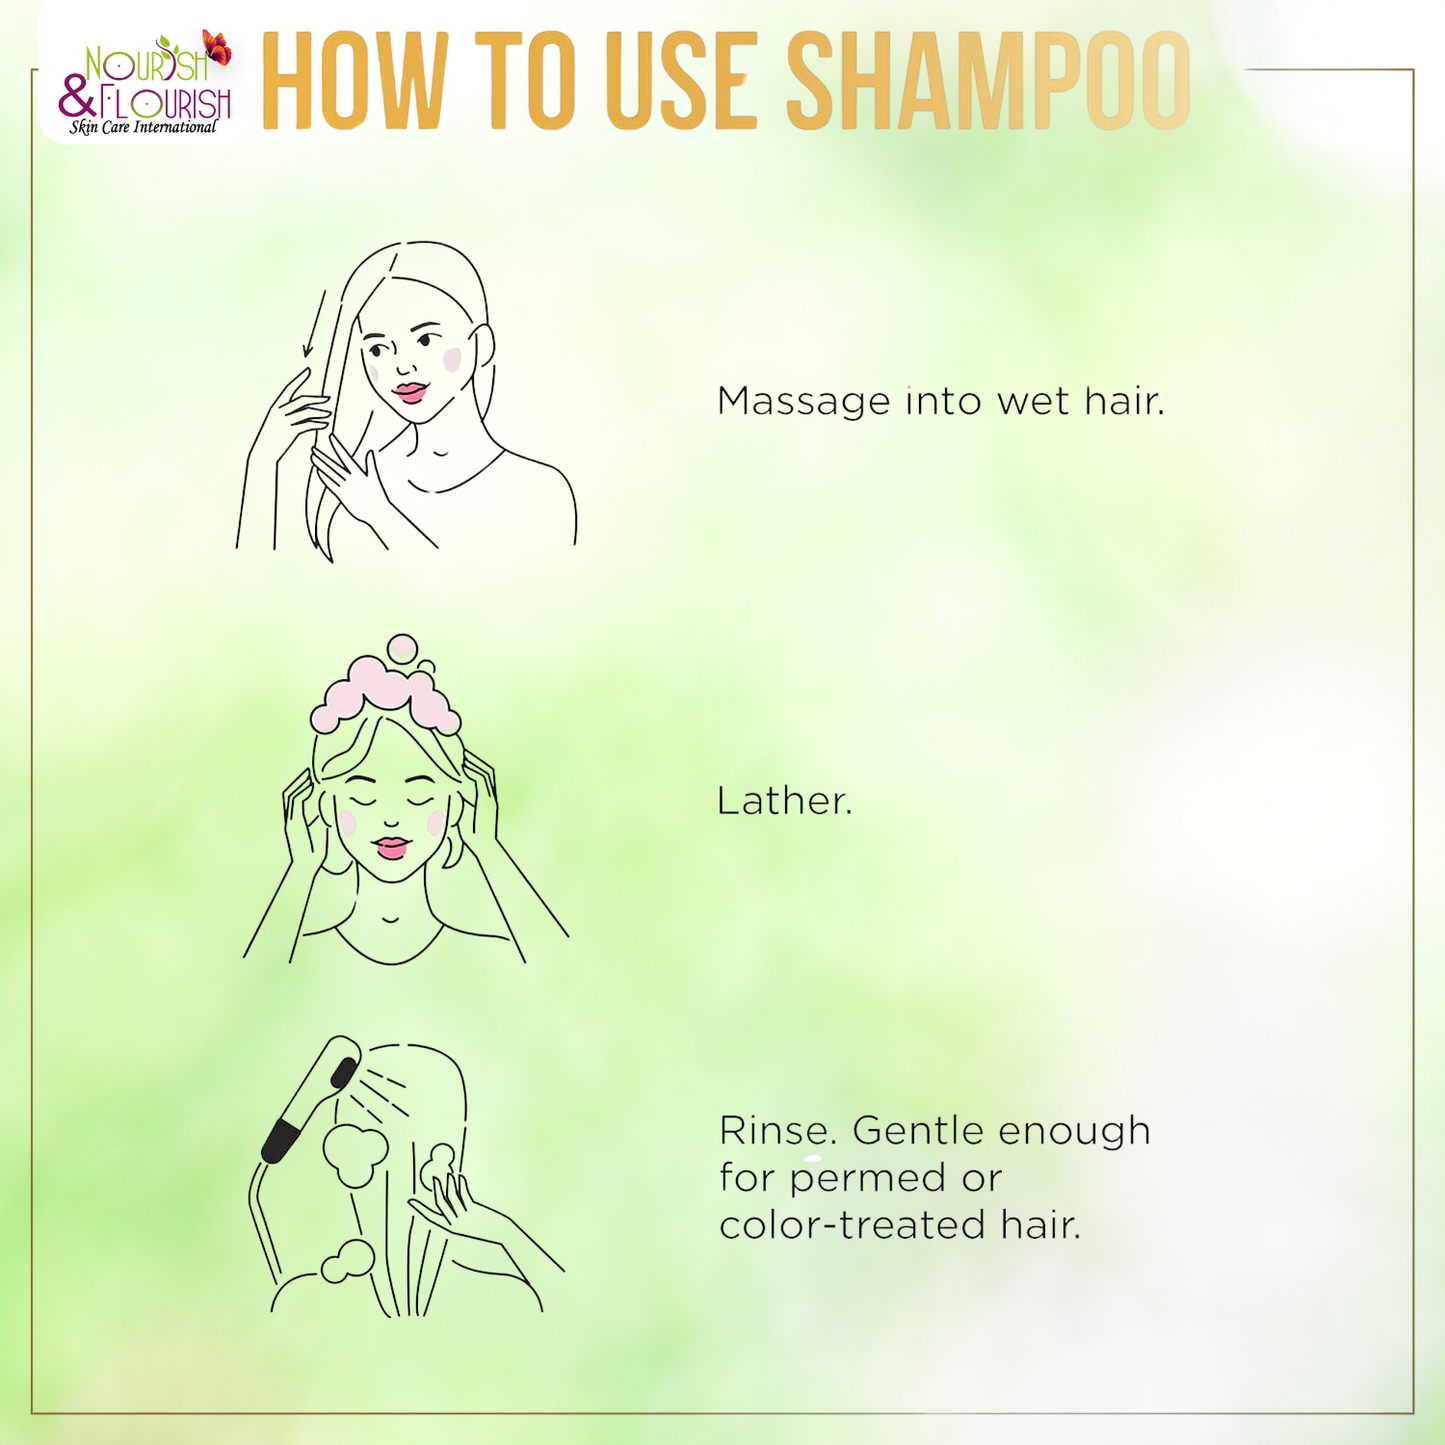 شامپو DETOX - شامپو احیا کننده و تازه کننده مو و پوست سر با عصاره رزماری و اکالیپتوس